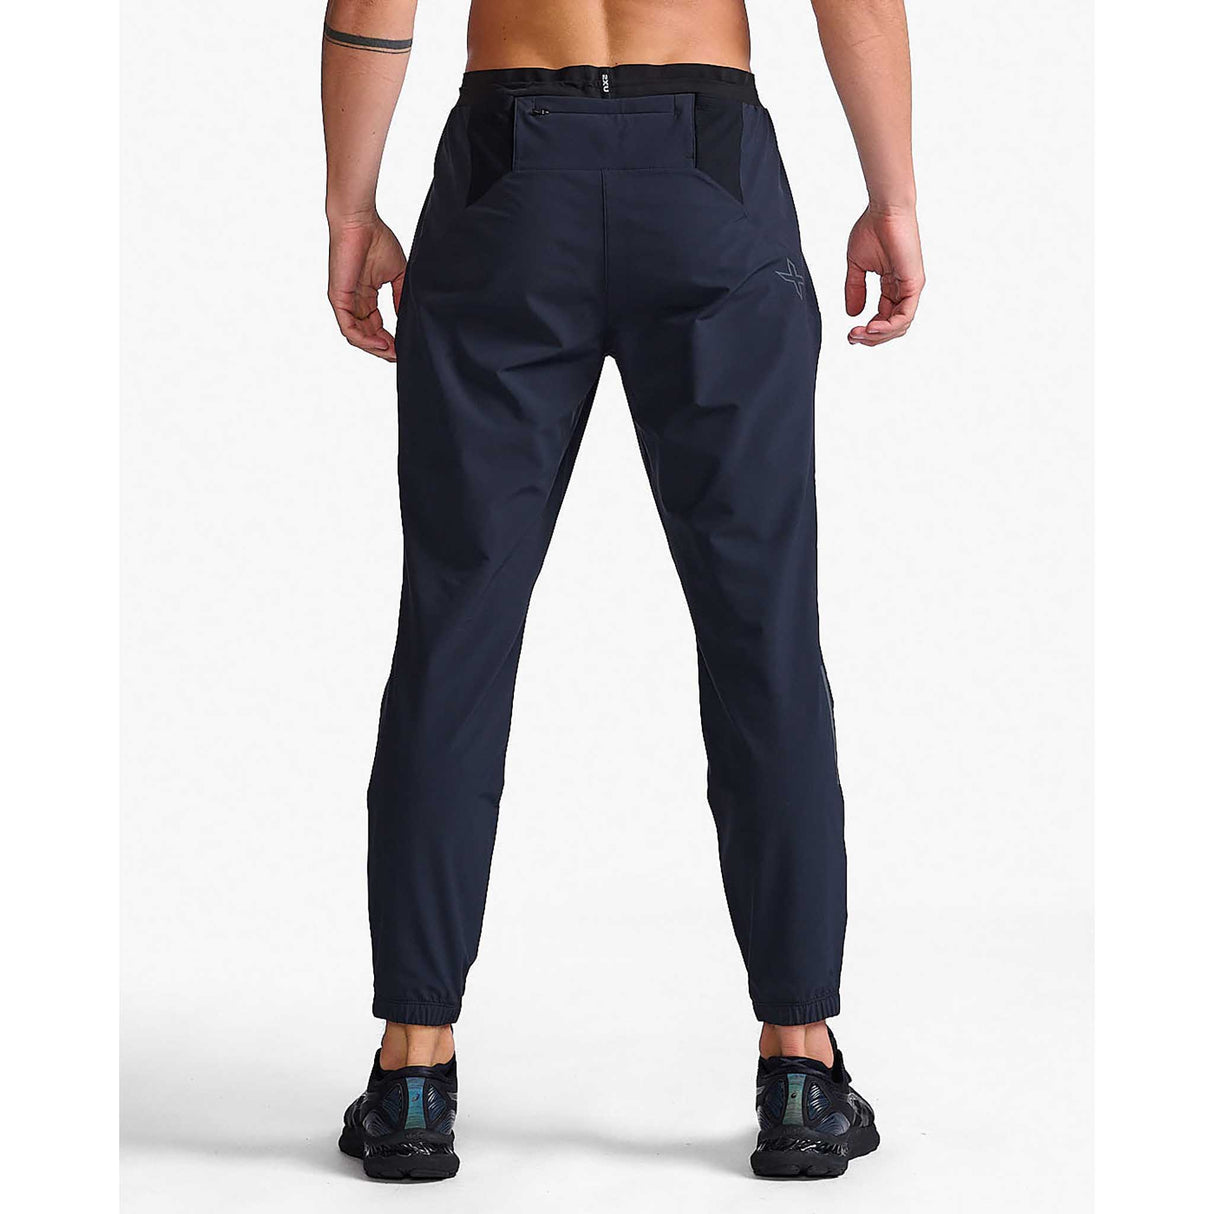 2XU Light Speed pantalons de jogging noir / noir réfléchissant homme dos